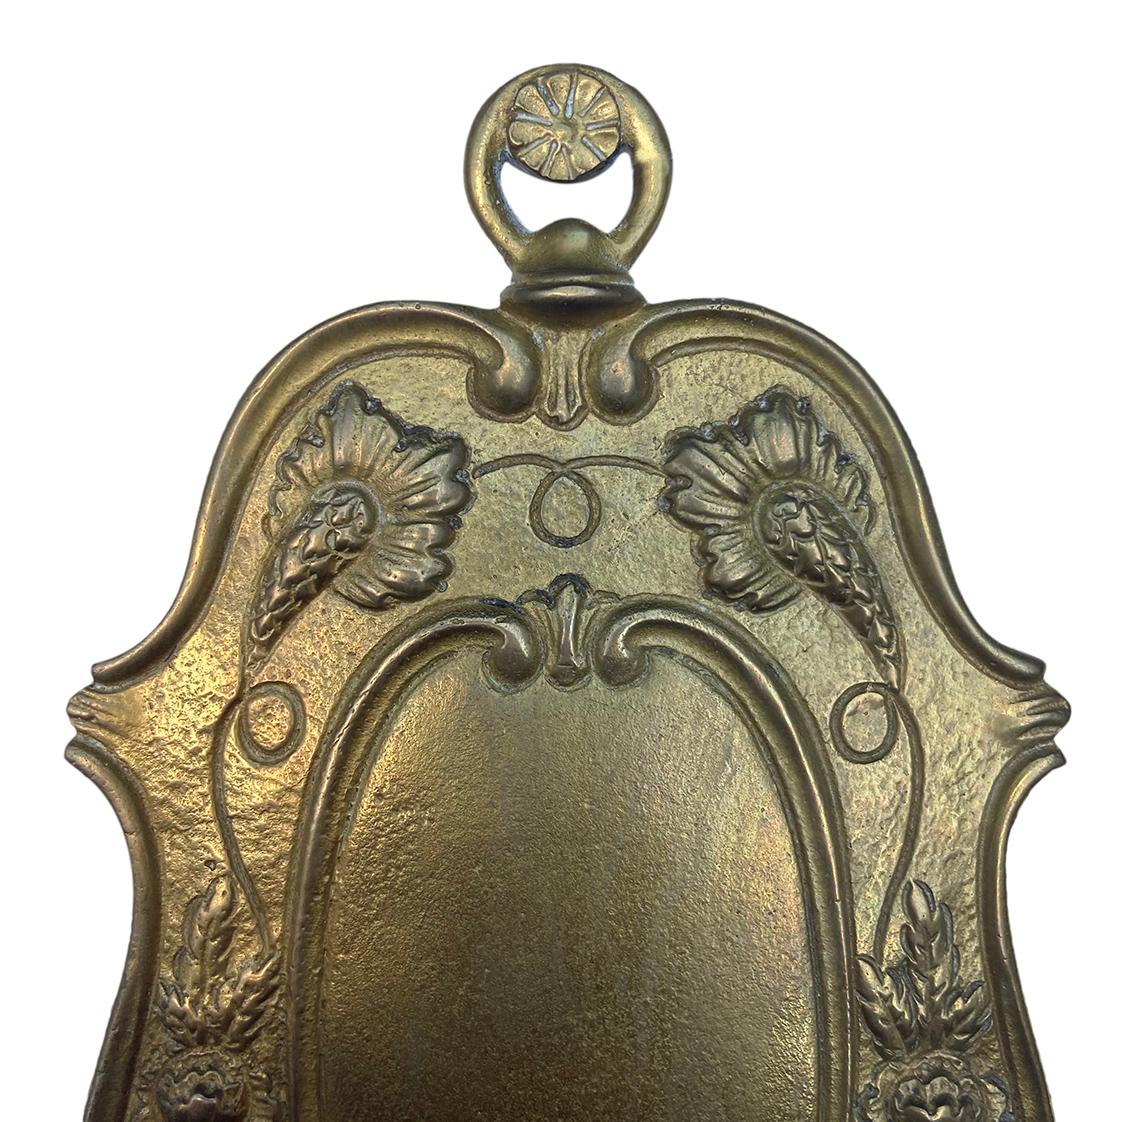 Paire d'appliques à deux lumières en bronze anglais, datant des années 1920, avec motif de feuillage sur la plaque arrière.
Mesures :
Hauteur 11